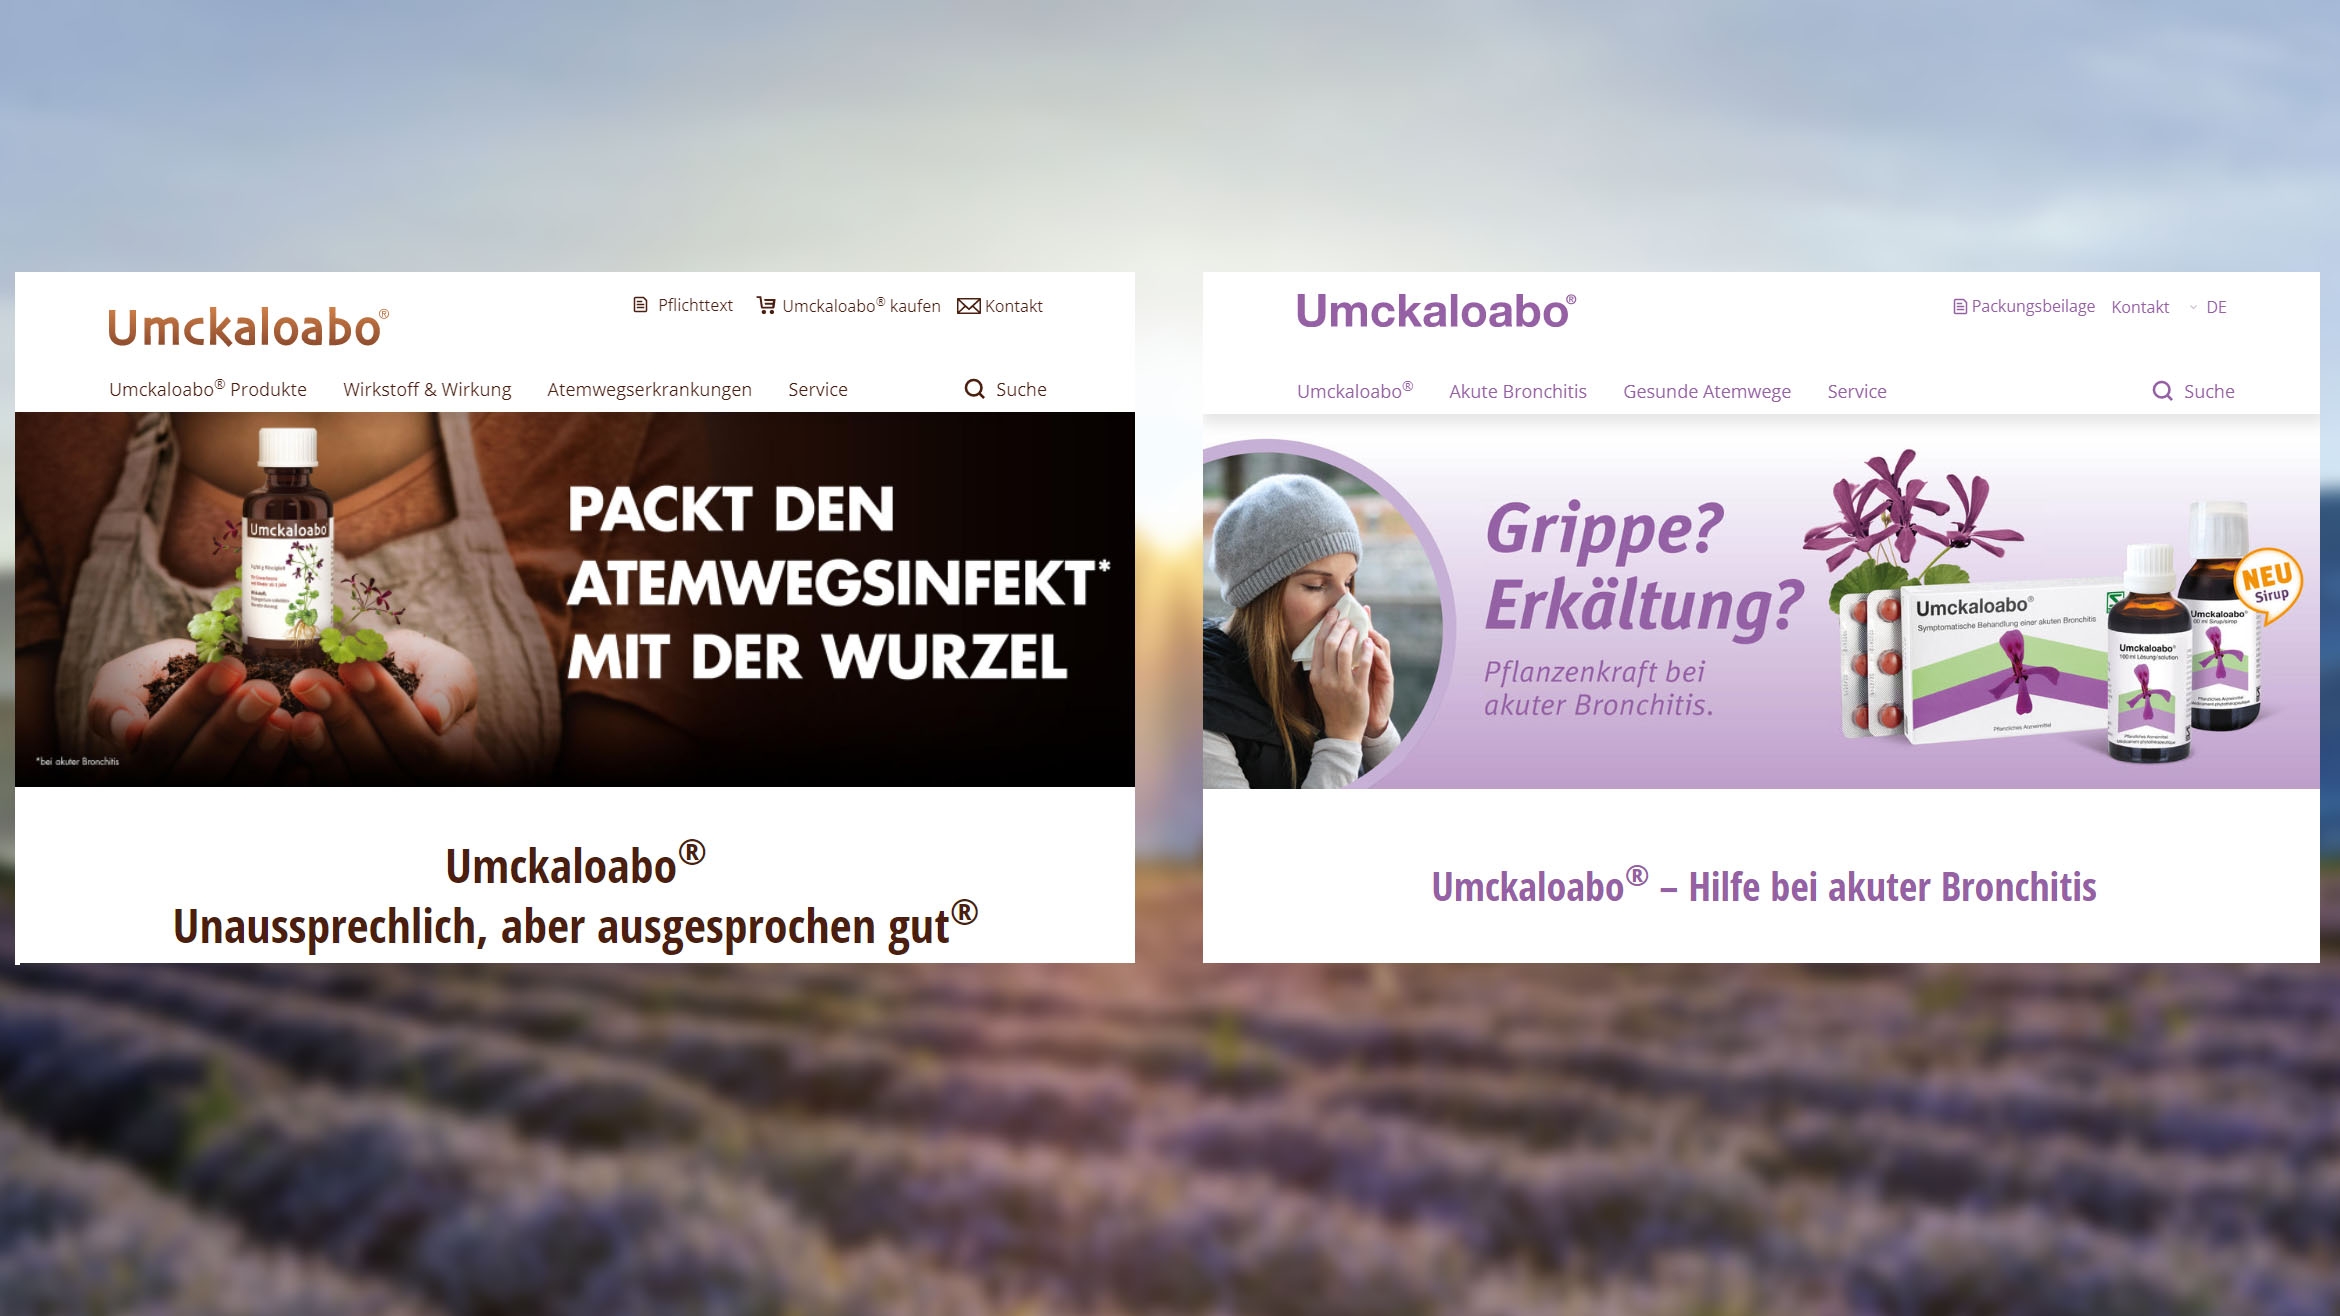 Die Websites des OTC-Präparats Umckaloabo in Deutschland und der Schweiz sehen signifikant unterschiedlich aus, basieren aber auf den gleichen Templates.